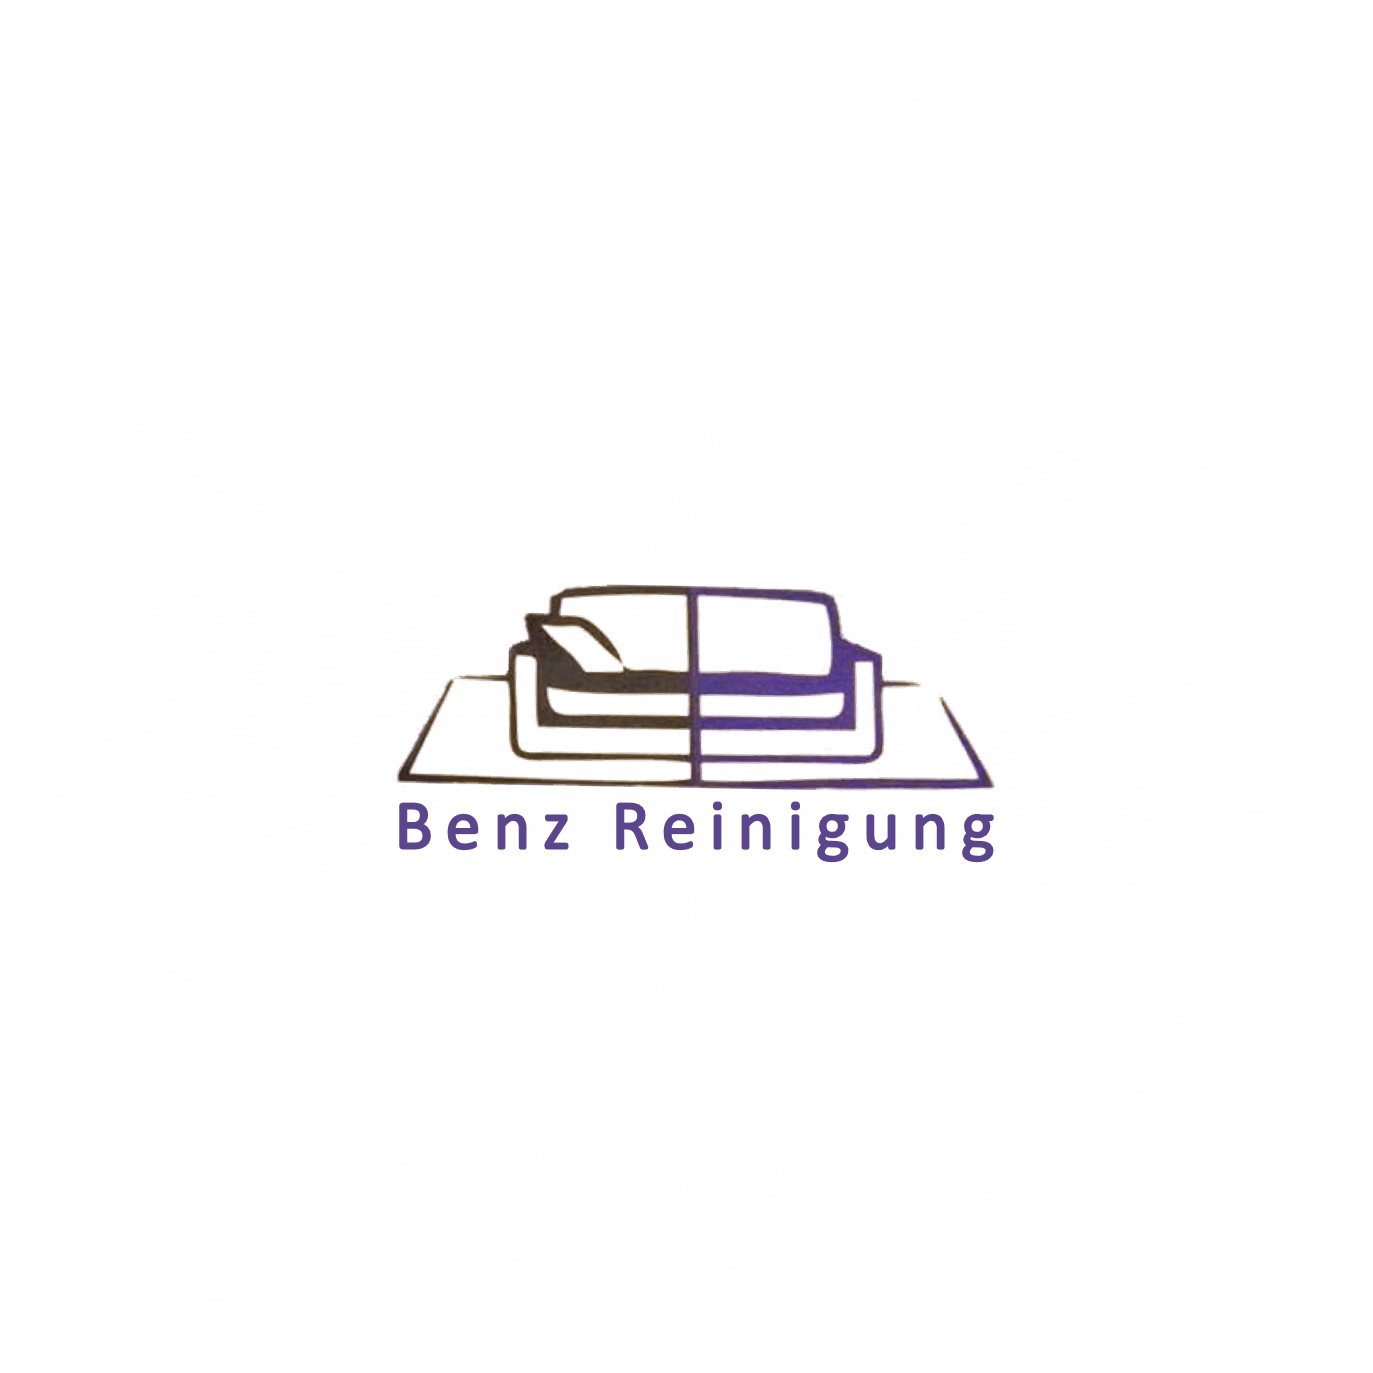 Benz Reinigung - Psd Spotlight Effect Photoshop (1373x1373), Png Download